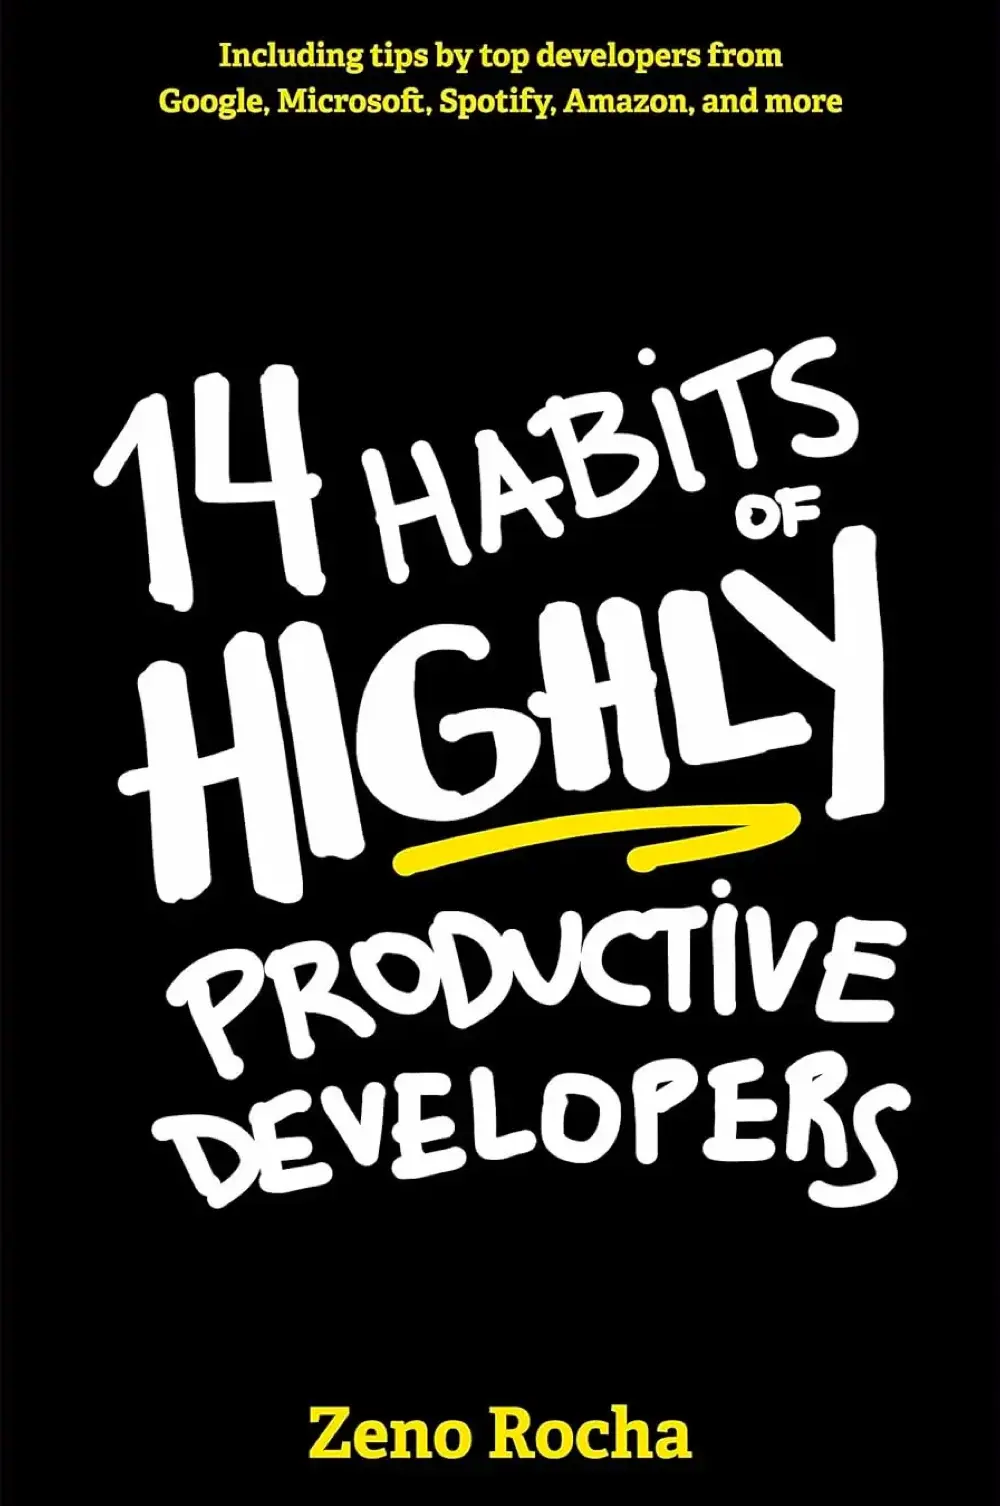 14 Habits Productive Devs